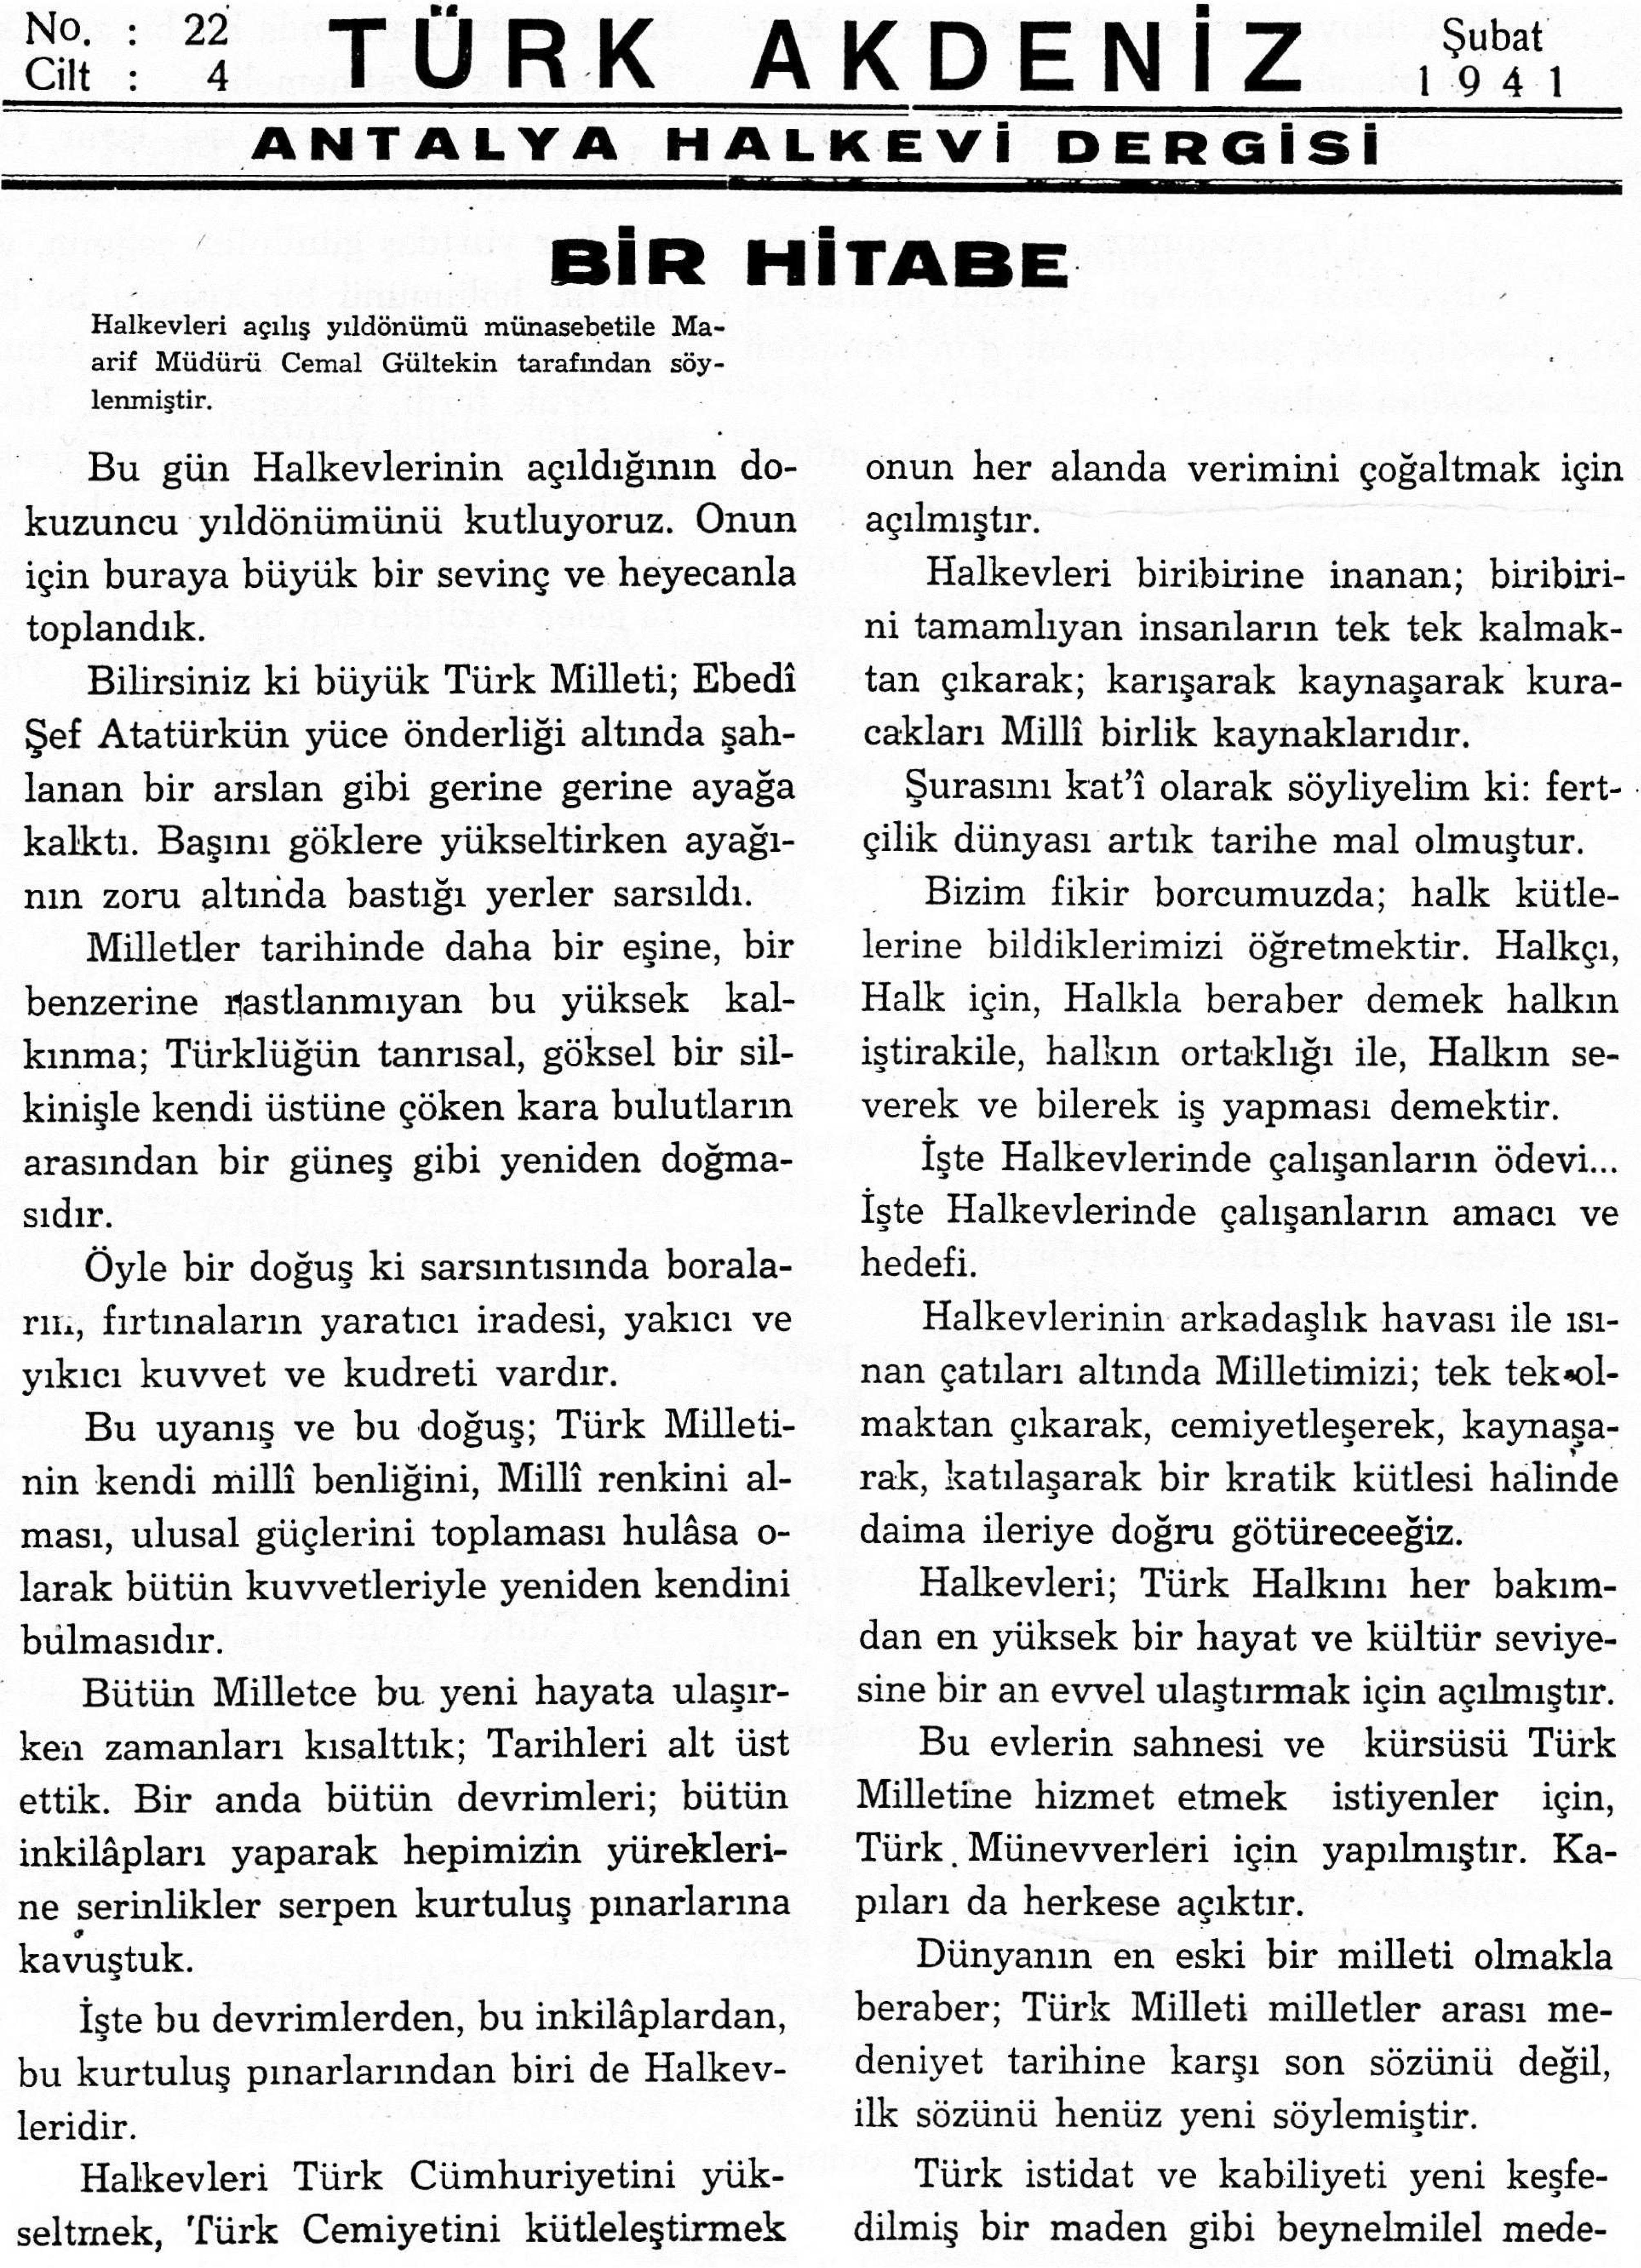 he-turk-akdeniz_1941-4(22)